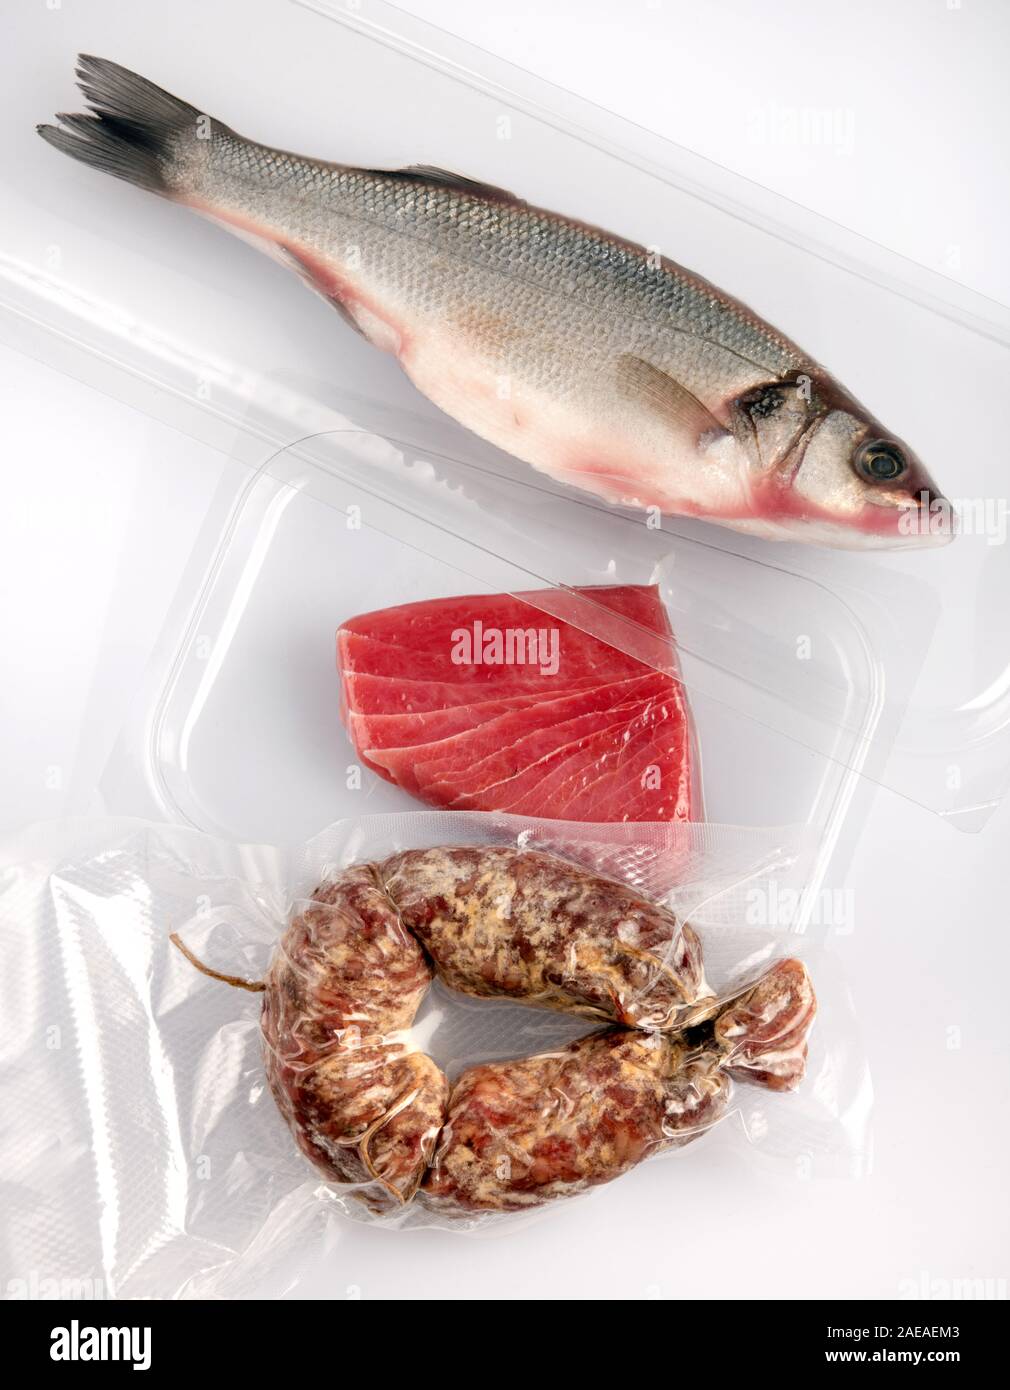 Verschiedene frische Lebensmittel Vakuum aus Kunststoff für die Lagerung verpackt mit einem ganzen Fisch gereinigt, Thunfisch Steak und würzige Wurst heraus auf einem weißen Tisch her gesehen Stockfoto